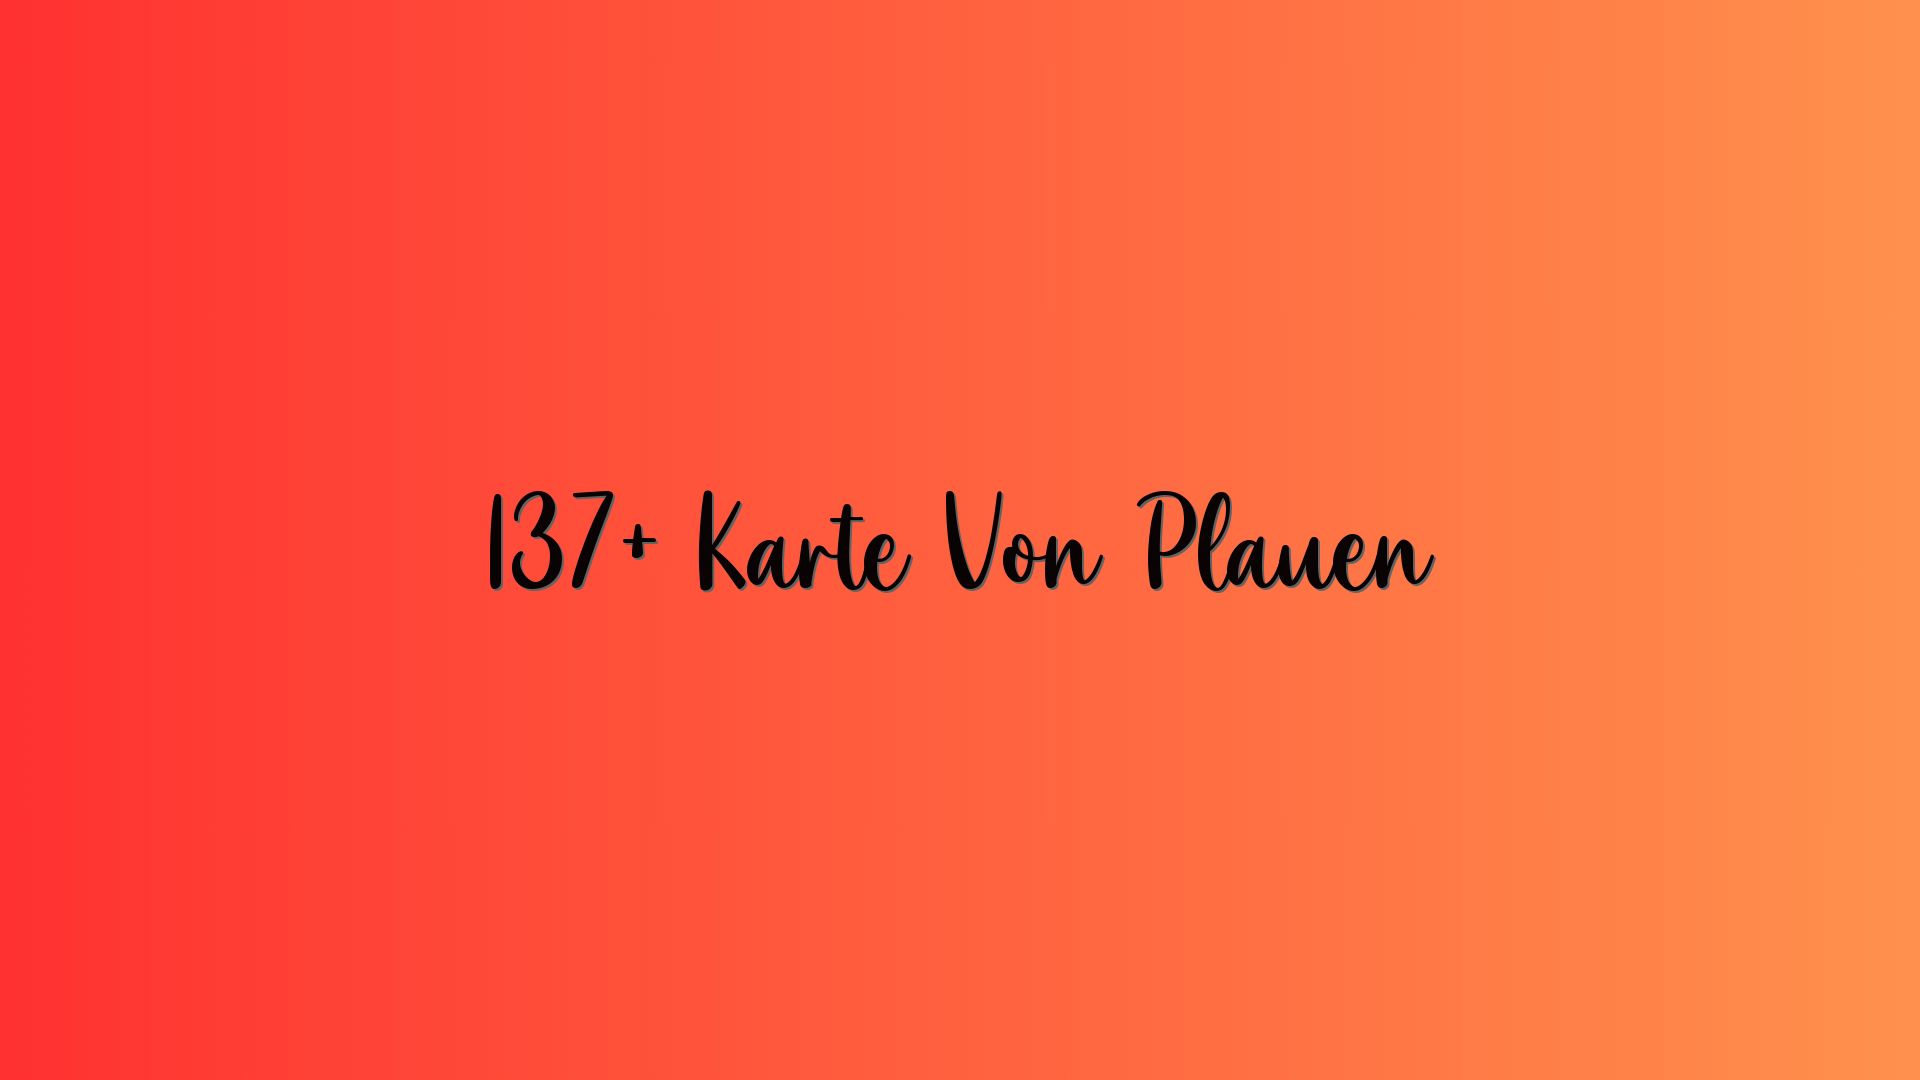 137+ Karte Von Plauen